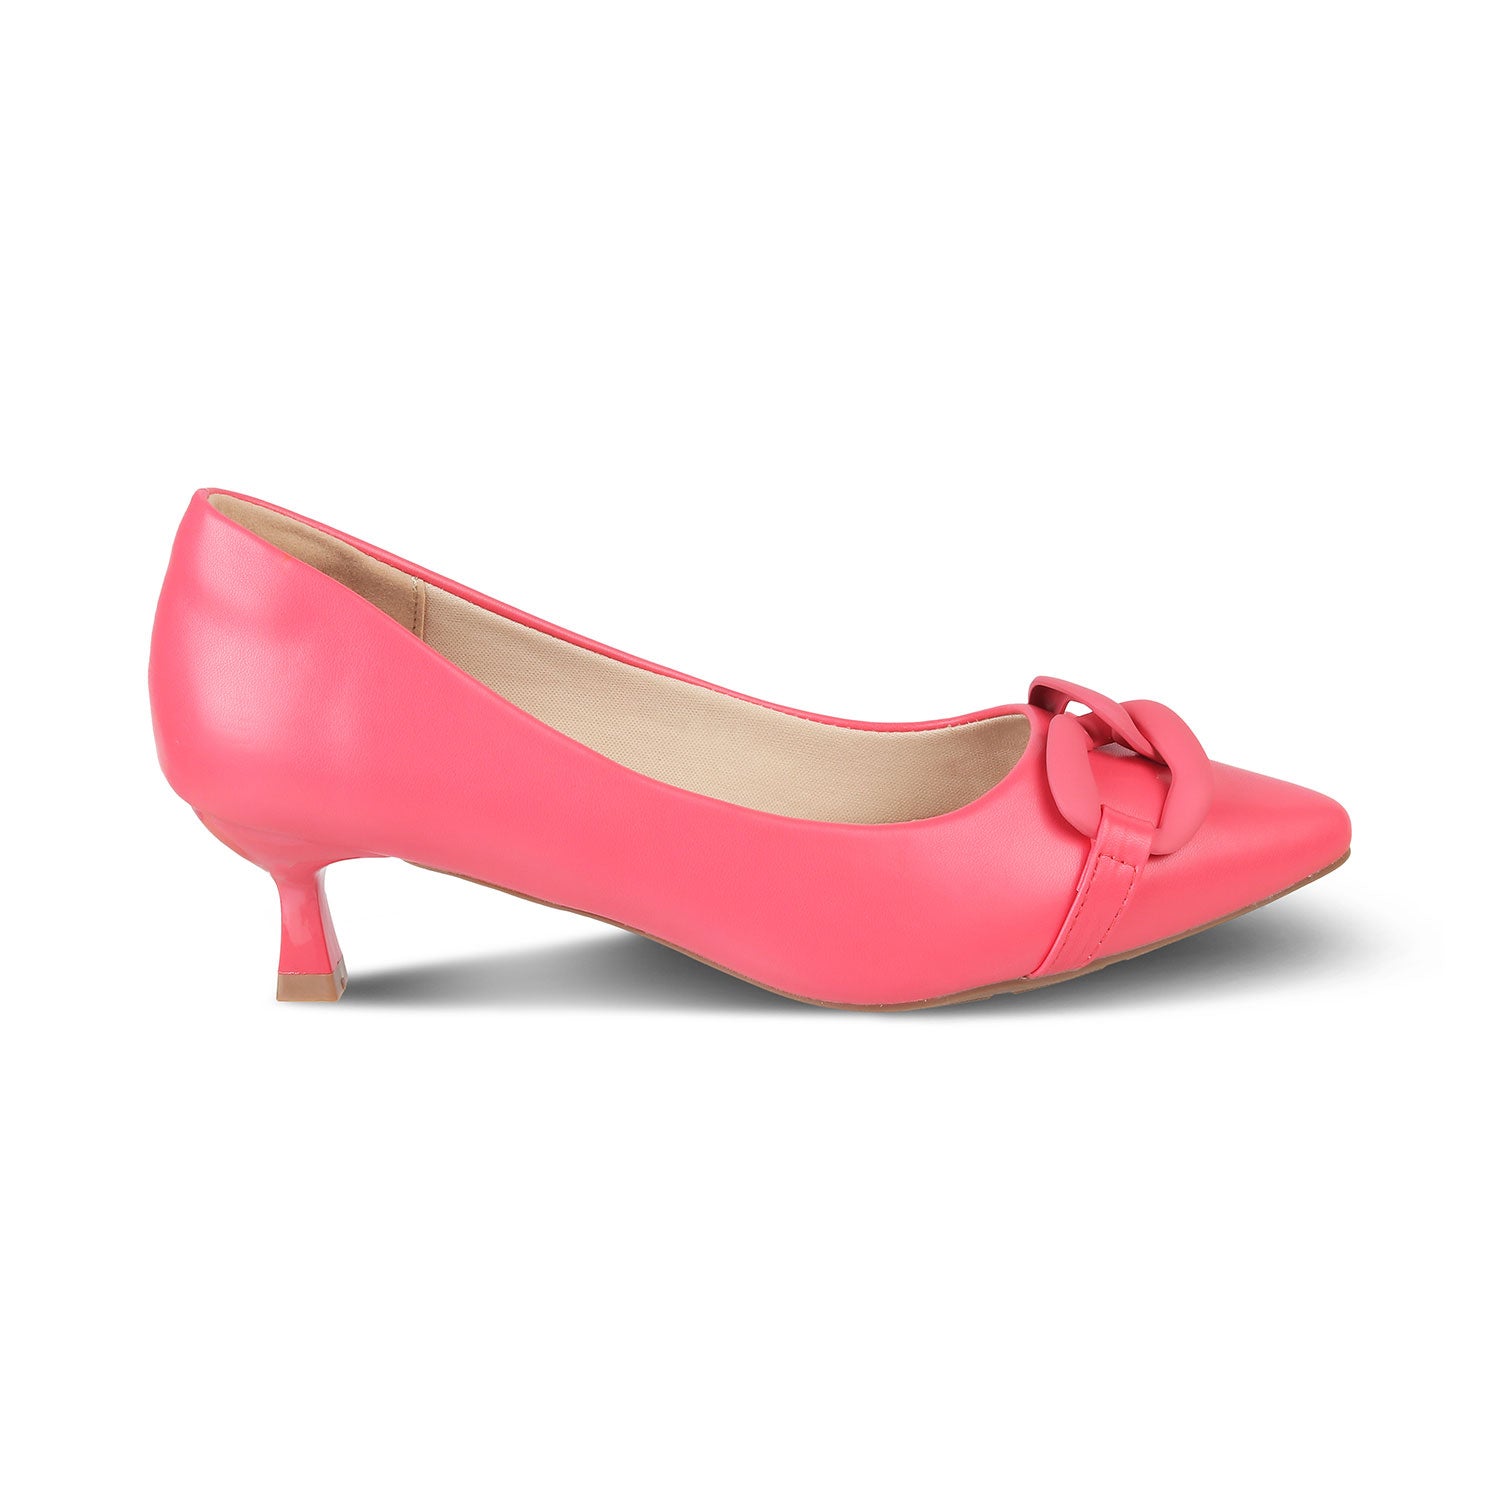 The Pesaro Pink Women's Kitten Heel Pumps Tresmode - Tresmode